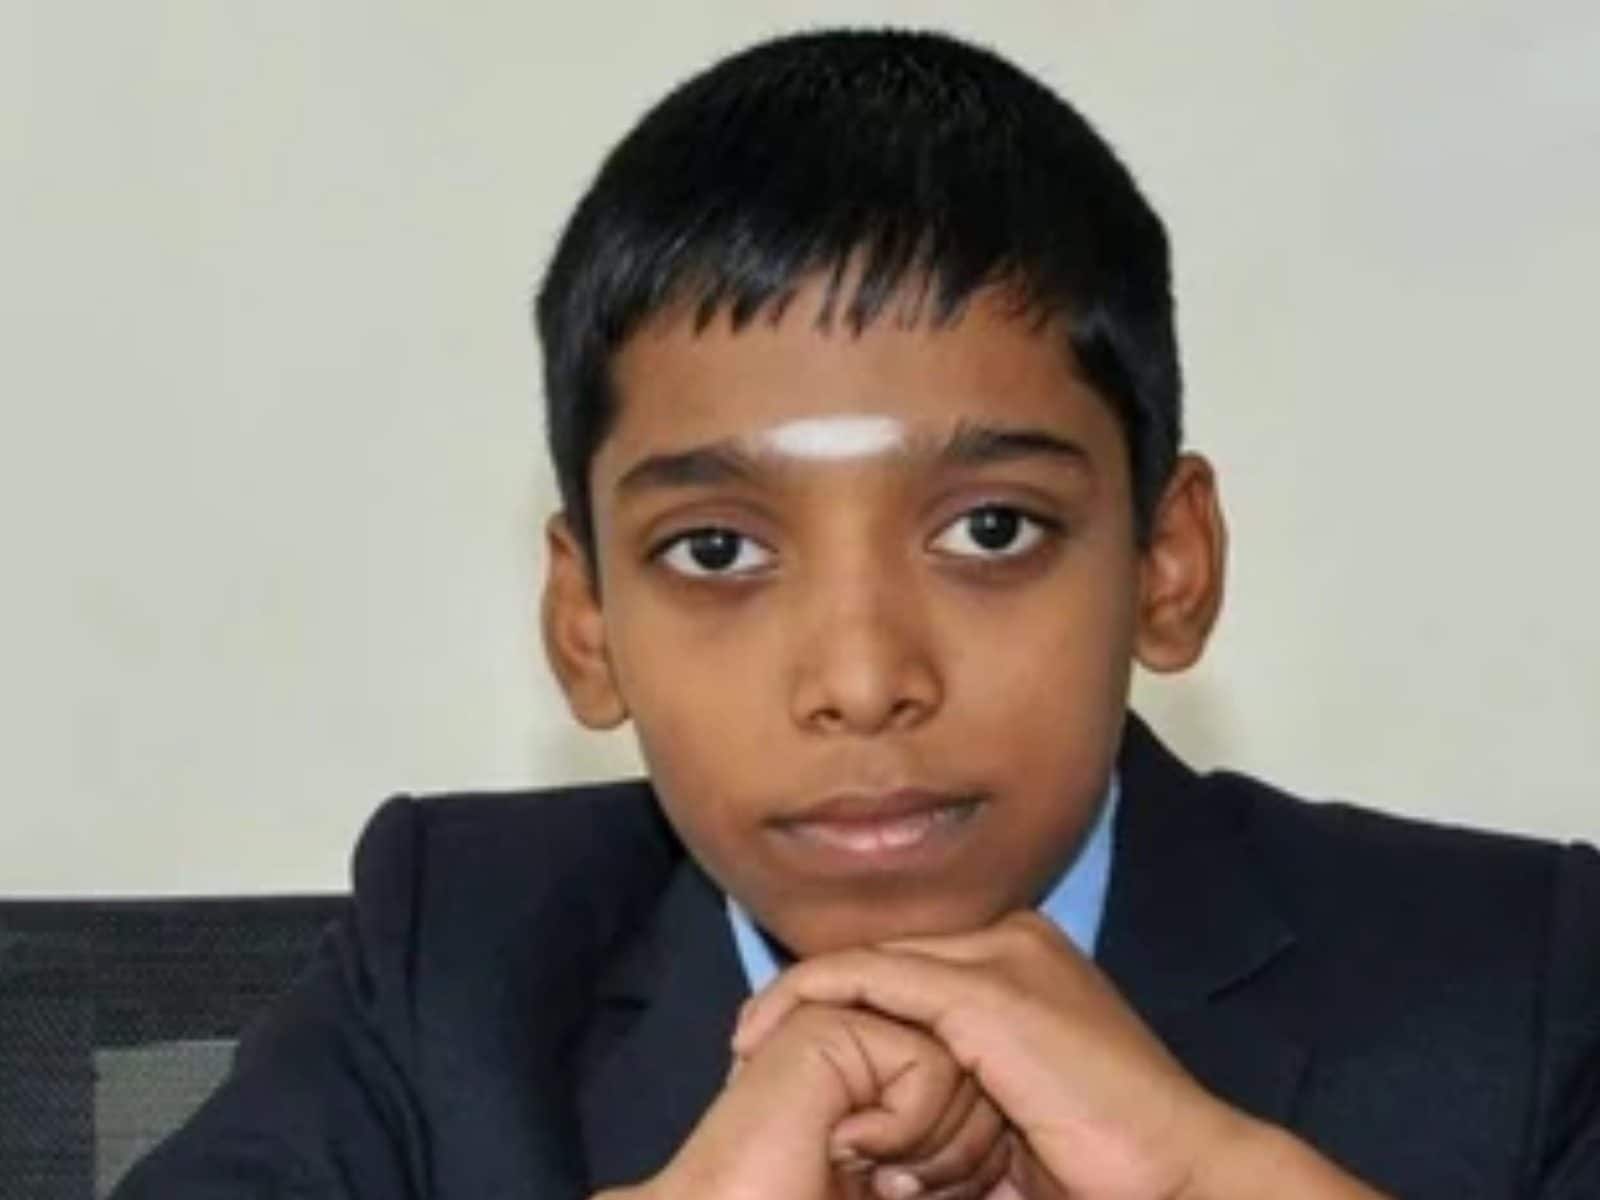 At 12, Chennai boy makes record Grandmaster move